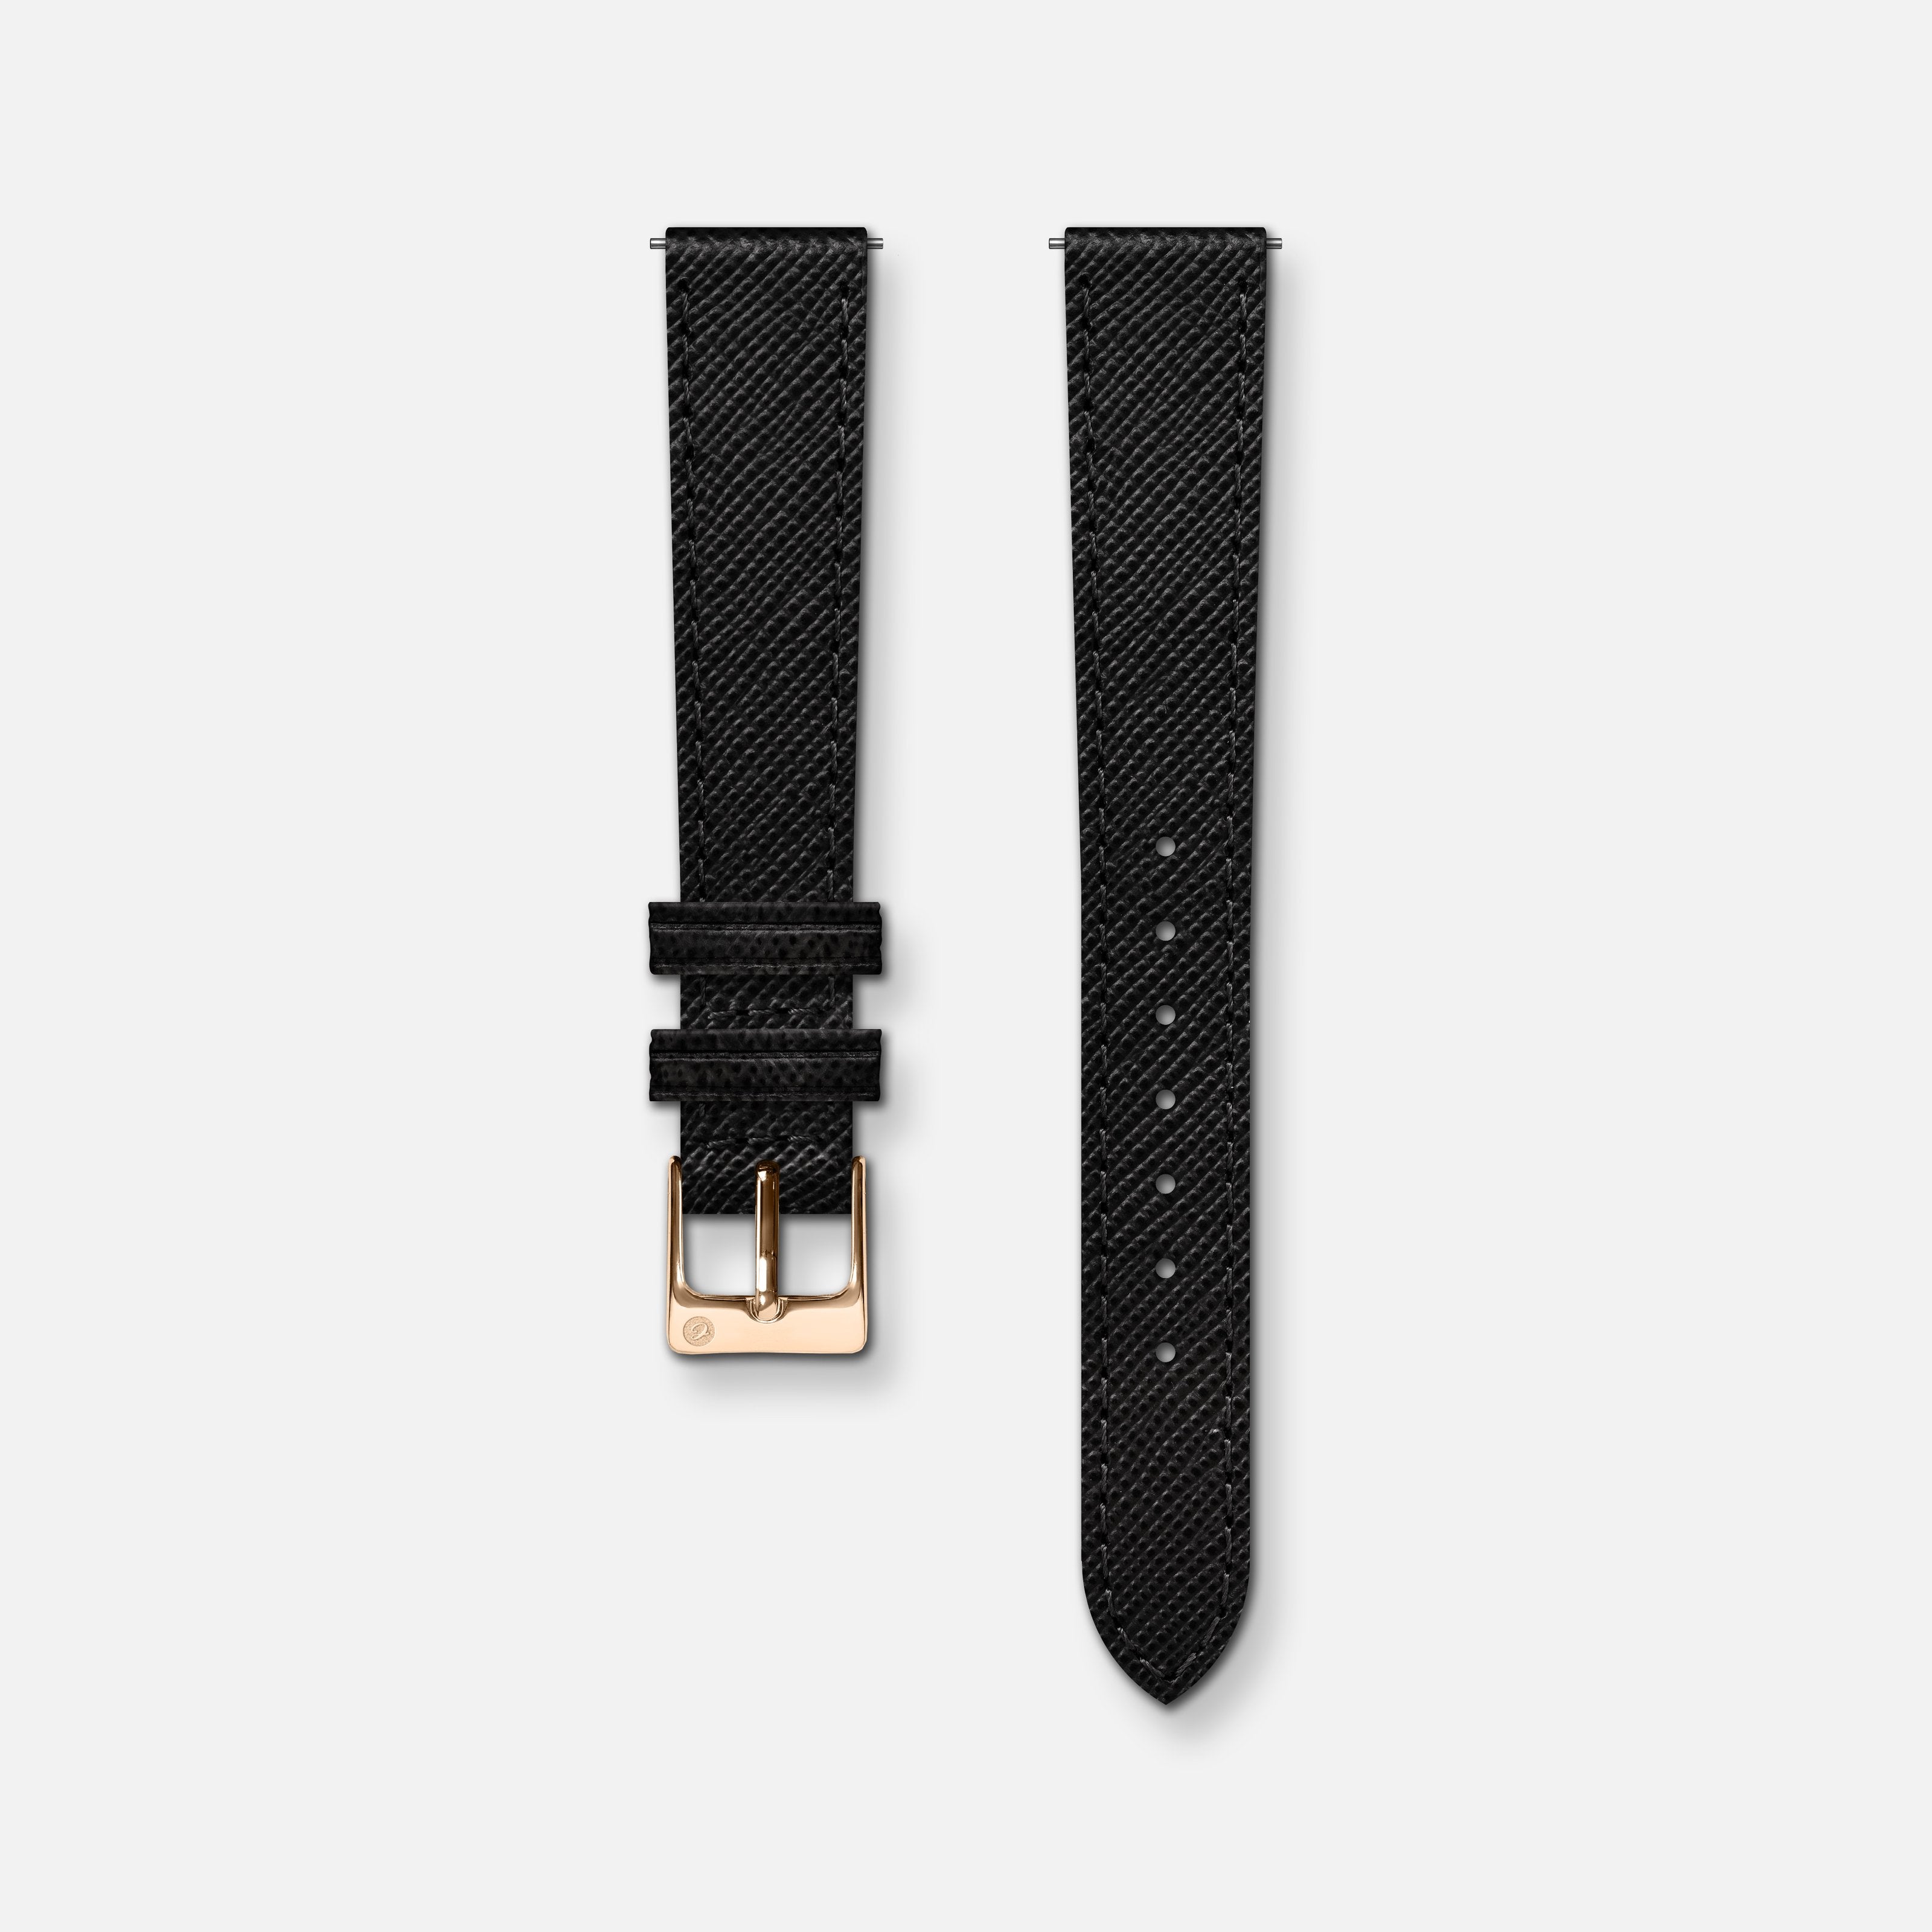 Black saffiano leather strap 14mm